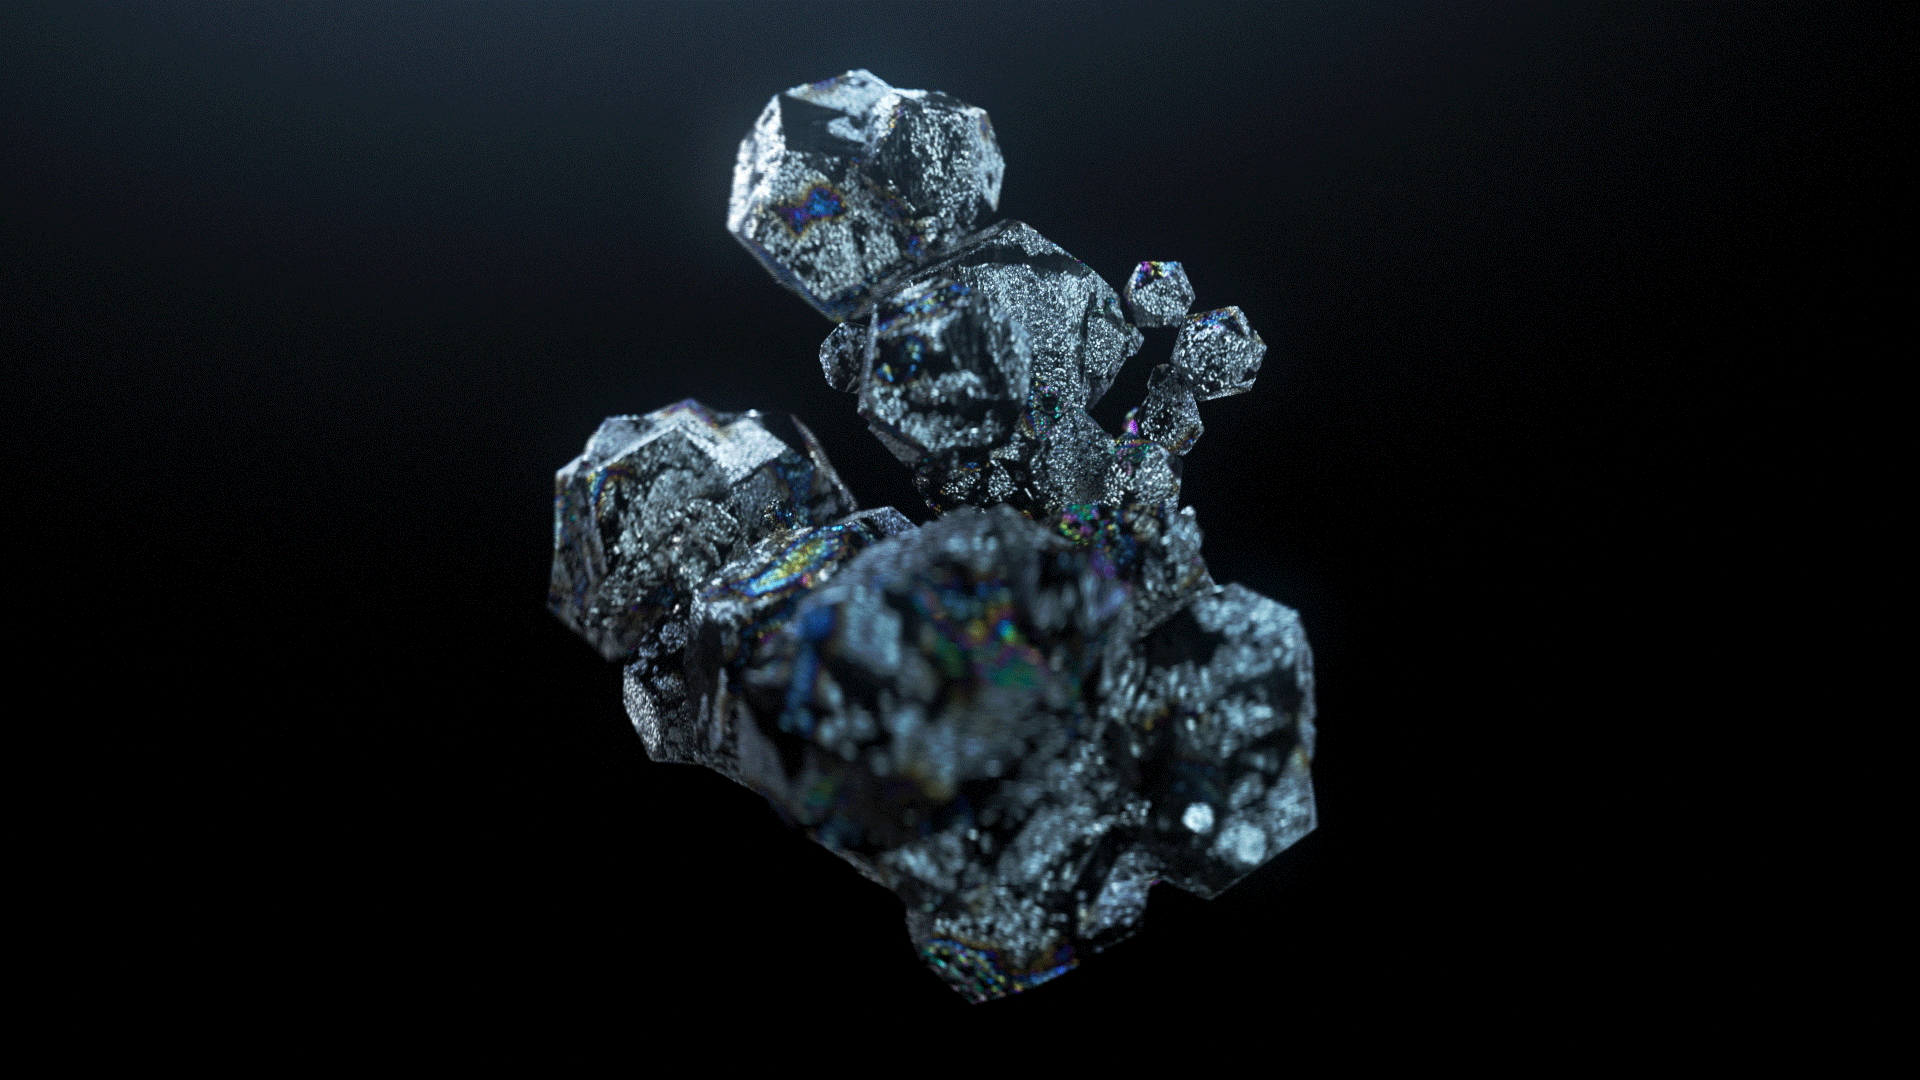 Abstrakt illustrierte Kristalle, die sich bewegen.